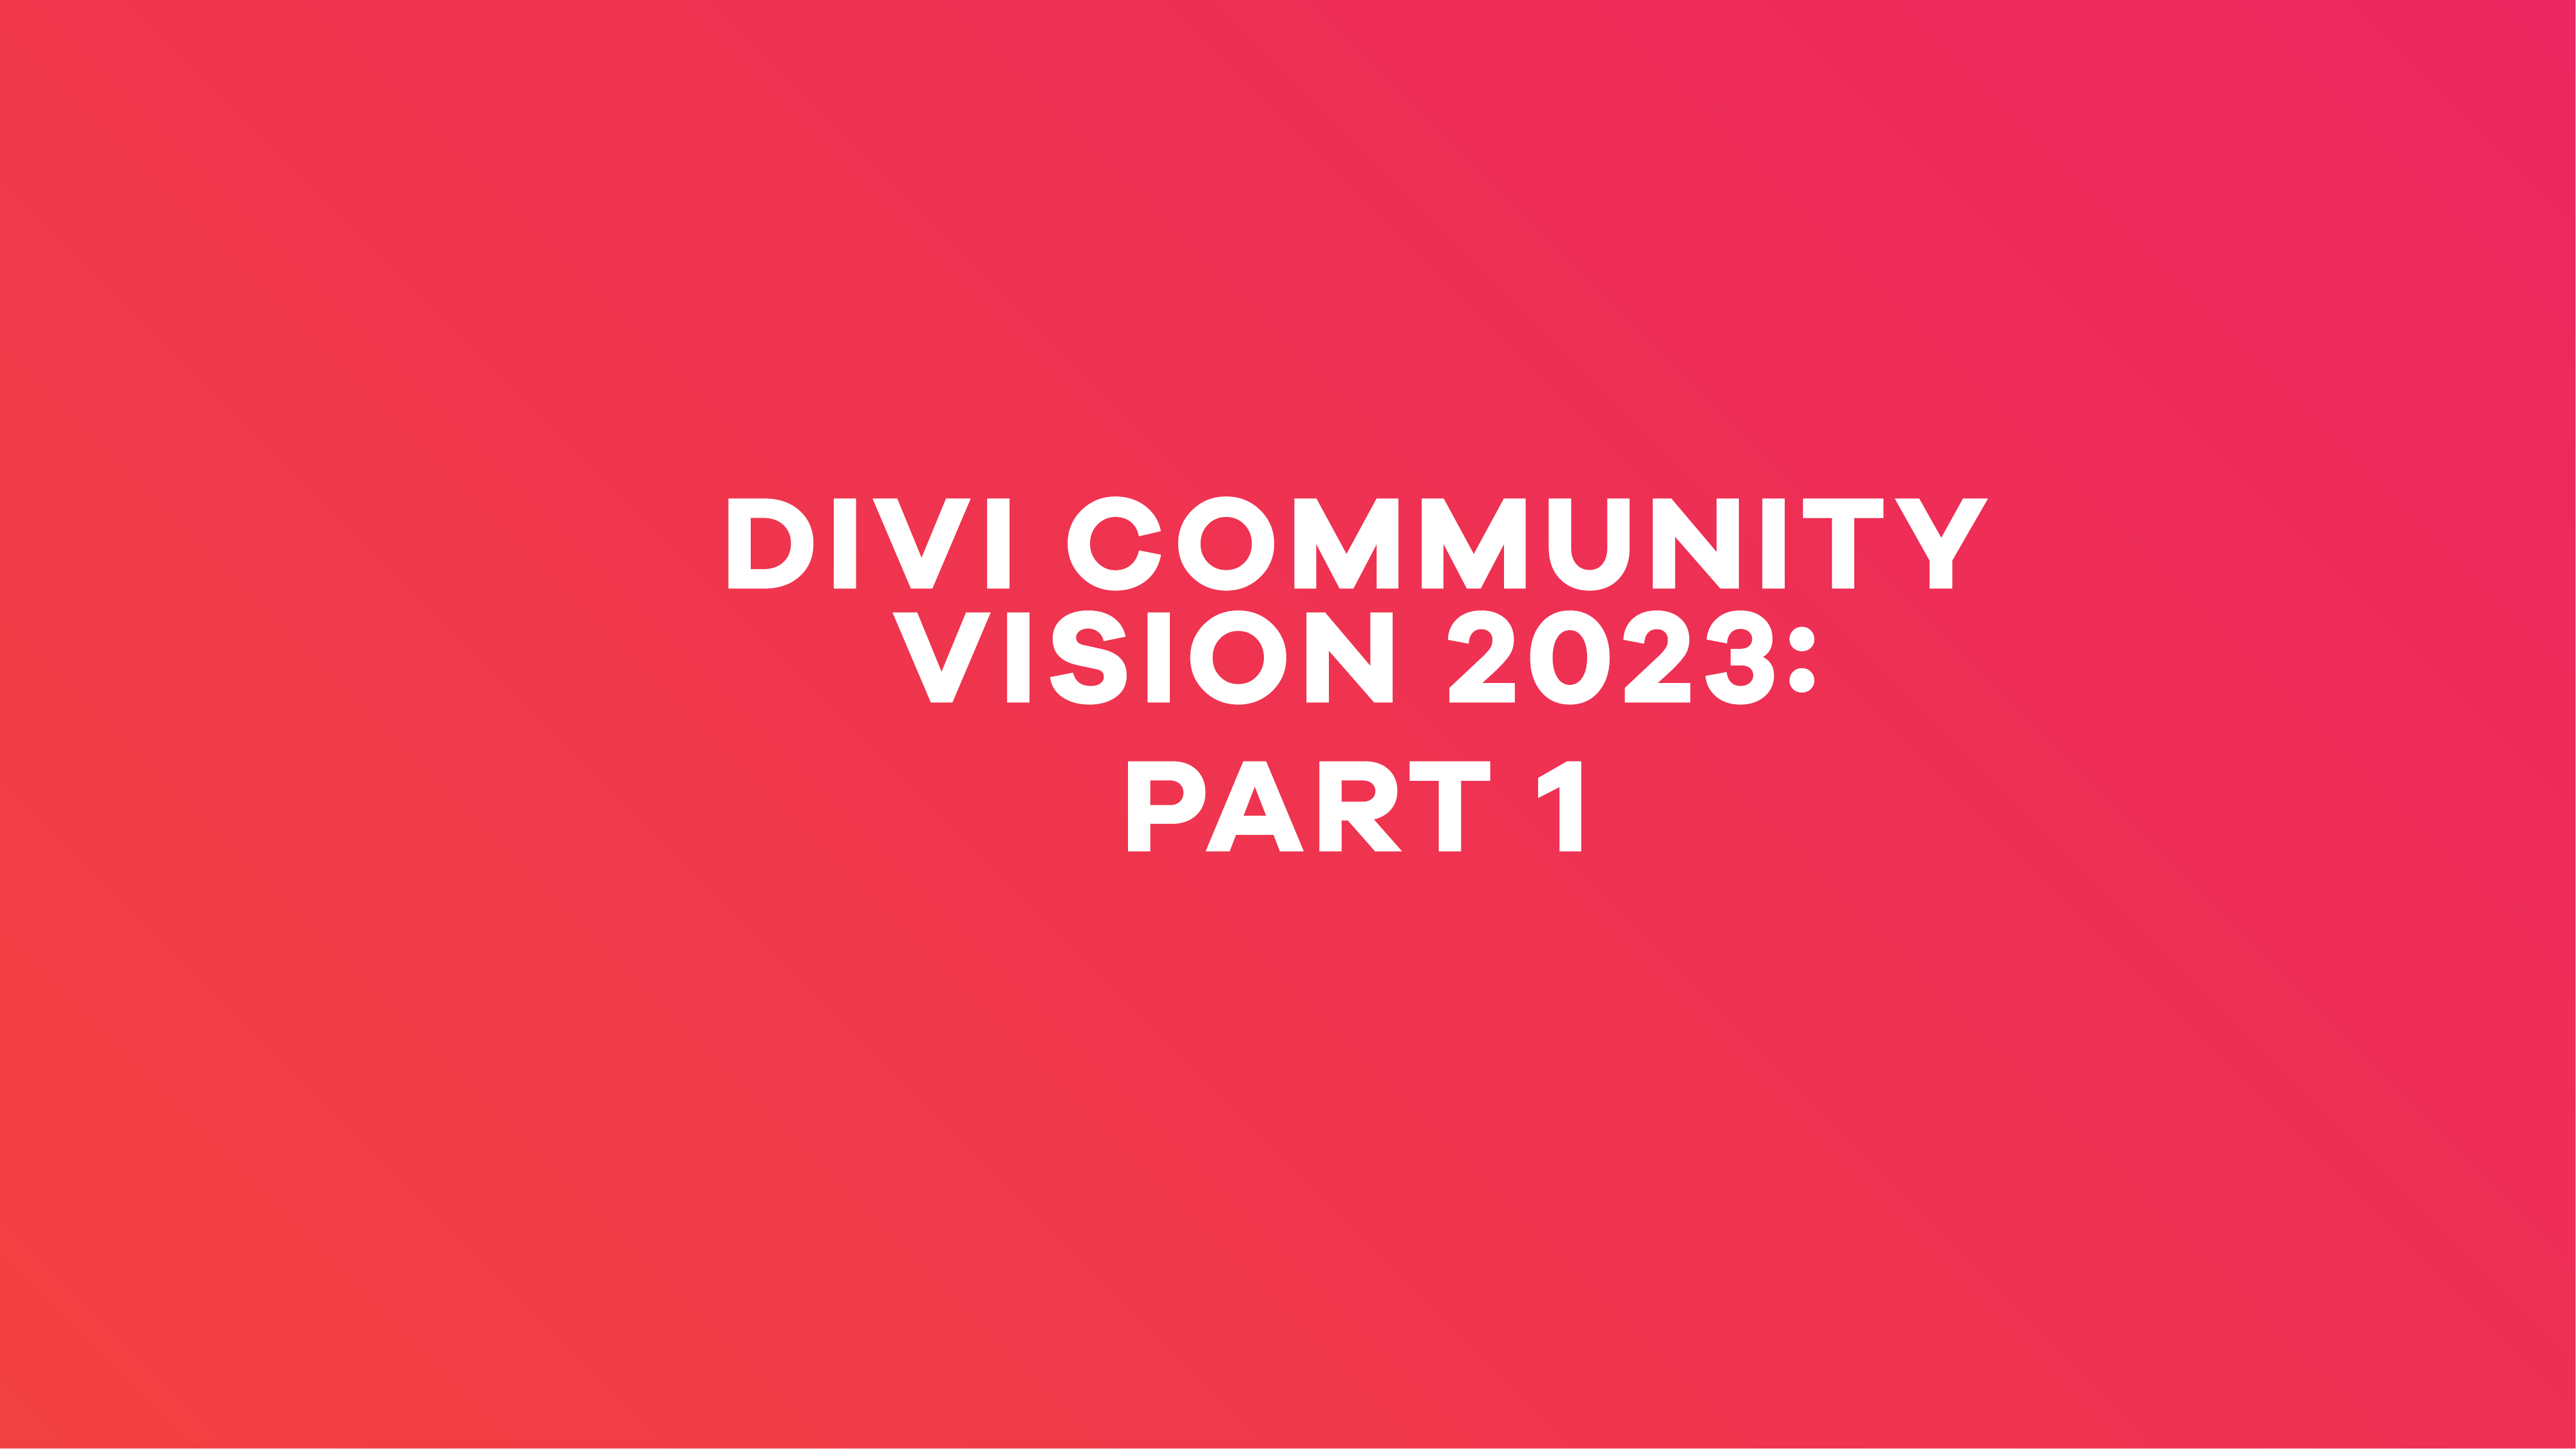 divi community vision 2023 part 1 cover